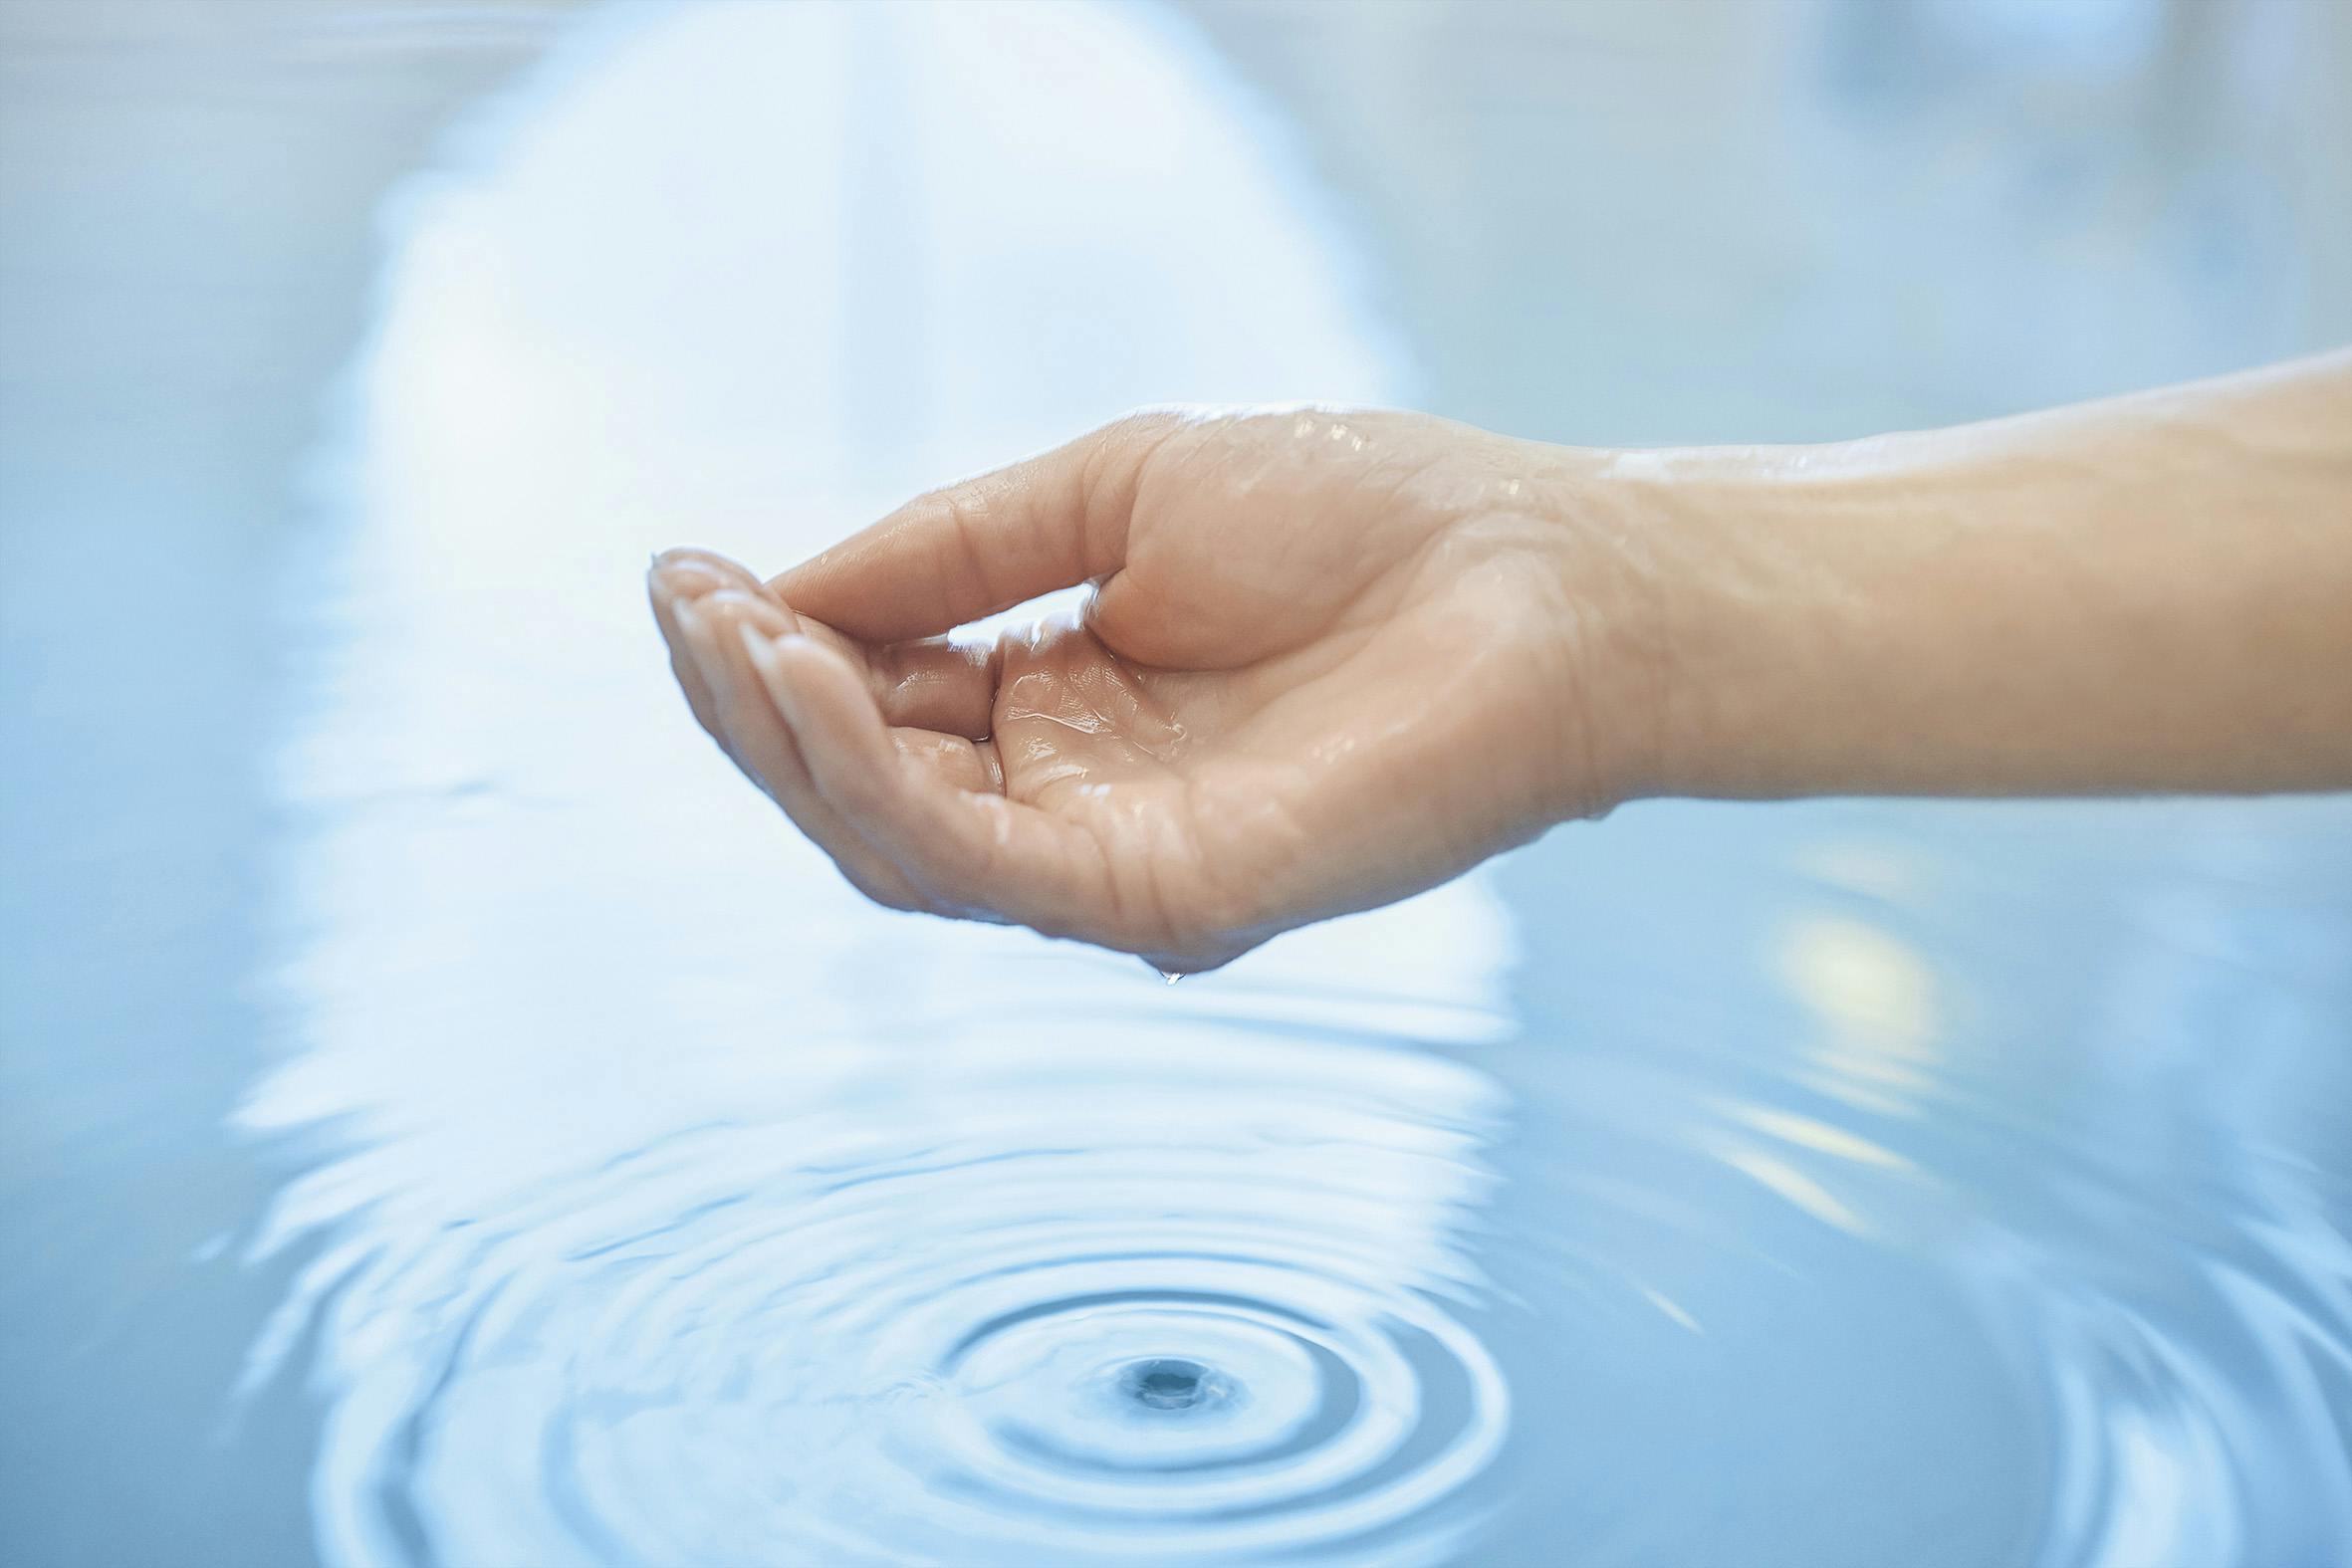 Detailaufnahme einer Hand, die Wasser ins Becken des Thermalbades tropfen lässt.